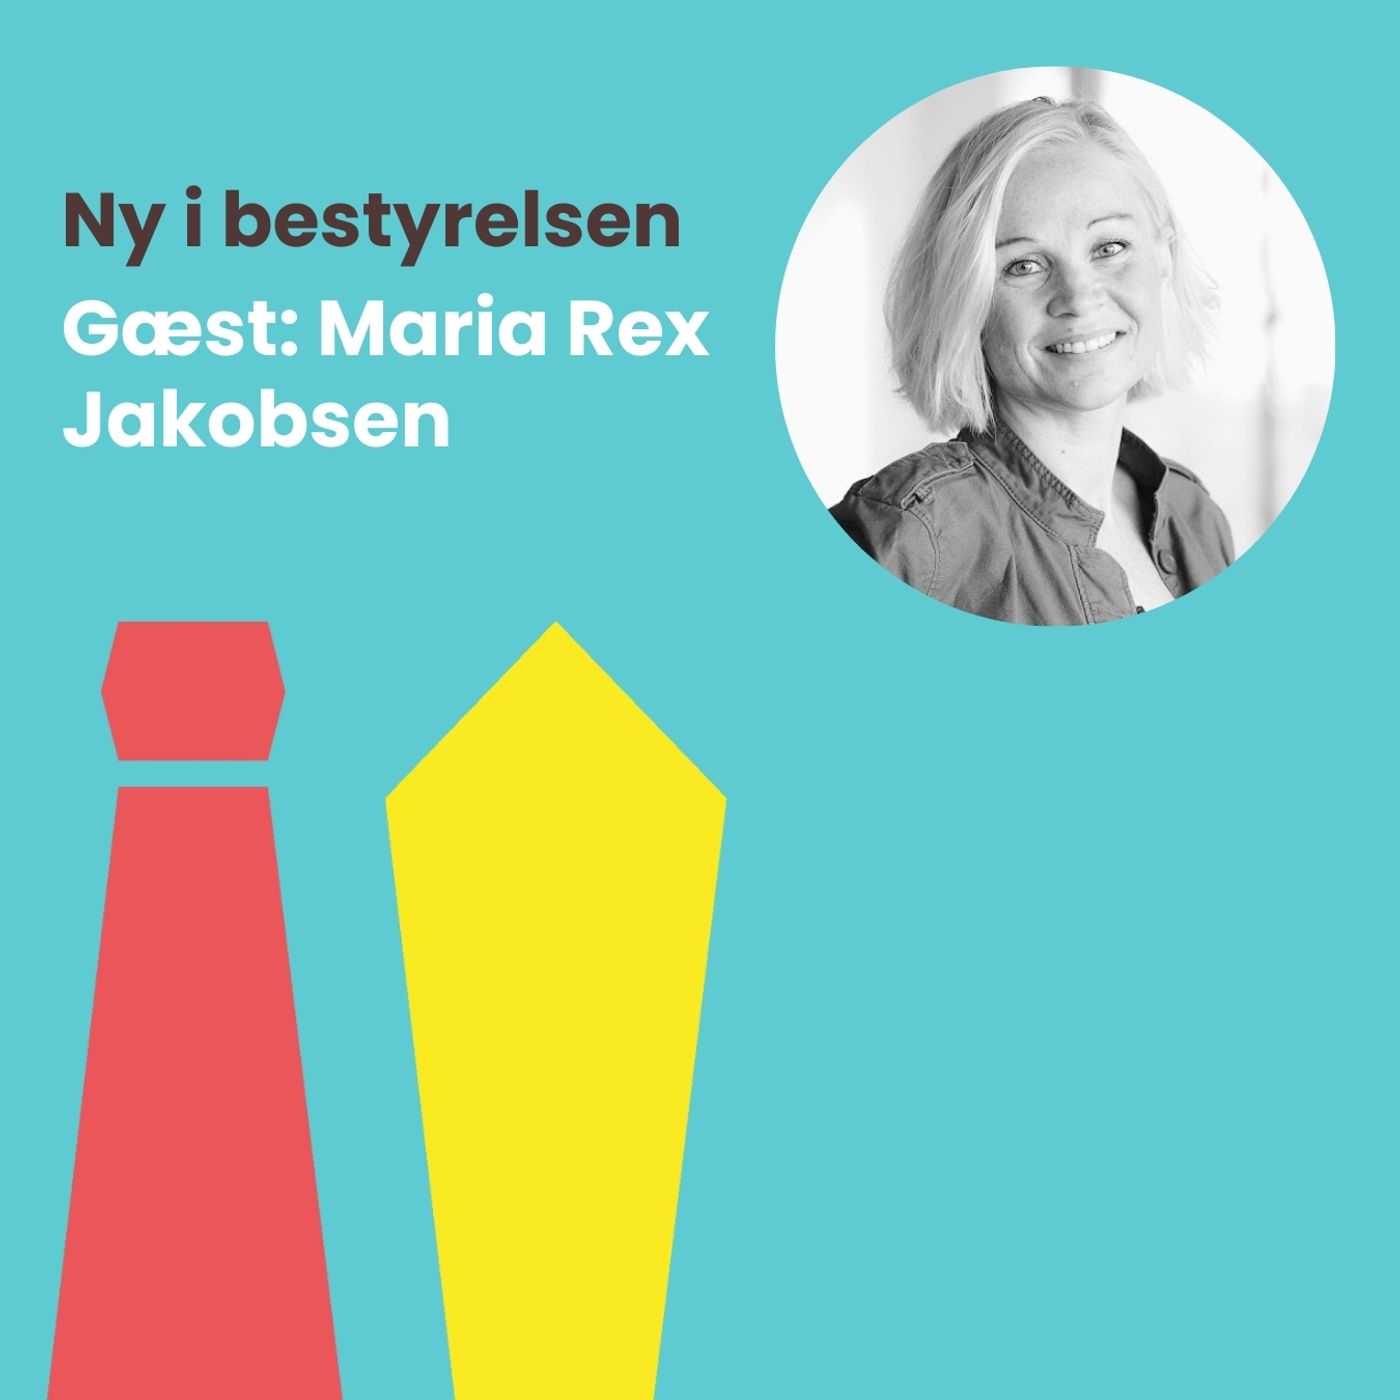 #44: Mød Maria Rex Jakobsen, som på rekordtid har landet 2 poster og startet sit eget bestyrelsesnetværk